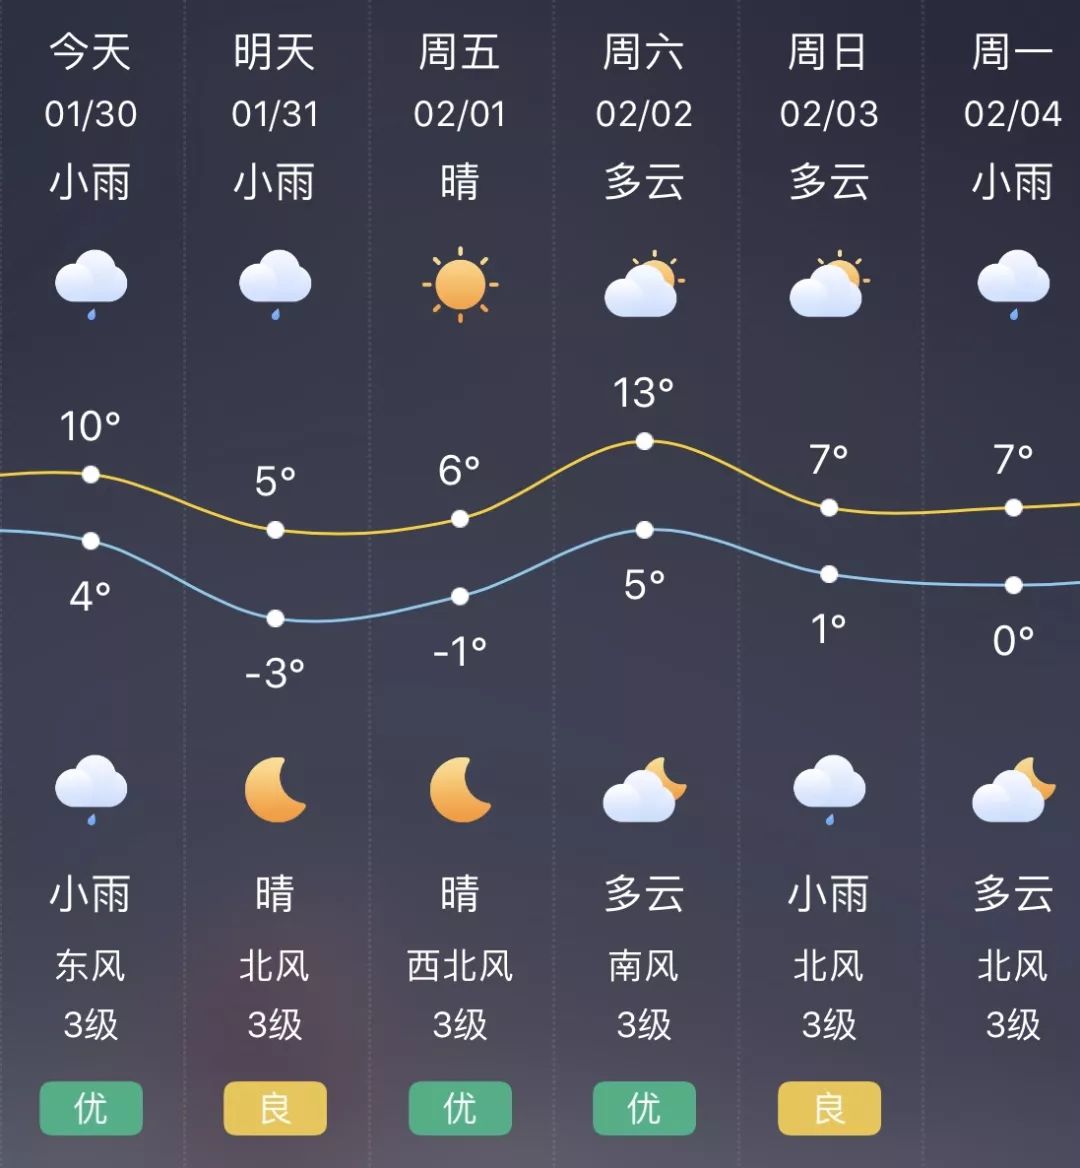 启东将遇极端降温天气!江苏还发布了暴雪预警!